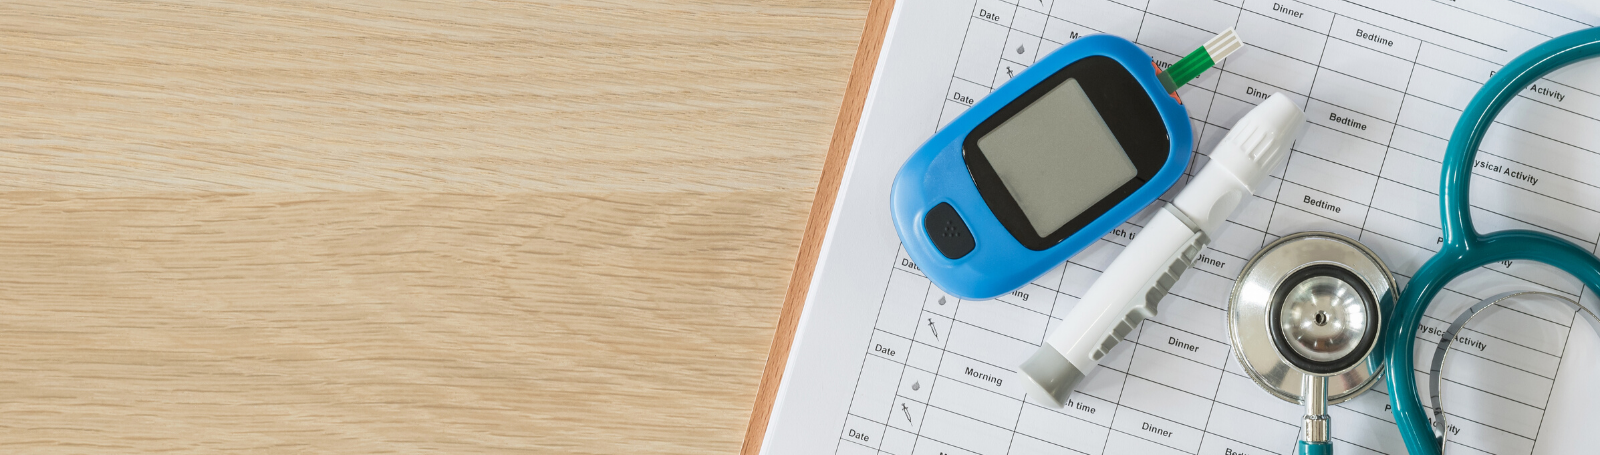 diabetes glucose monitor, lancet and stethoscope